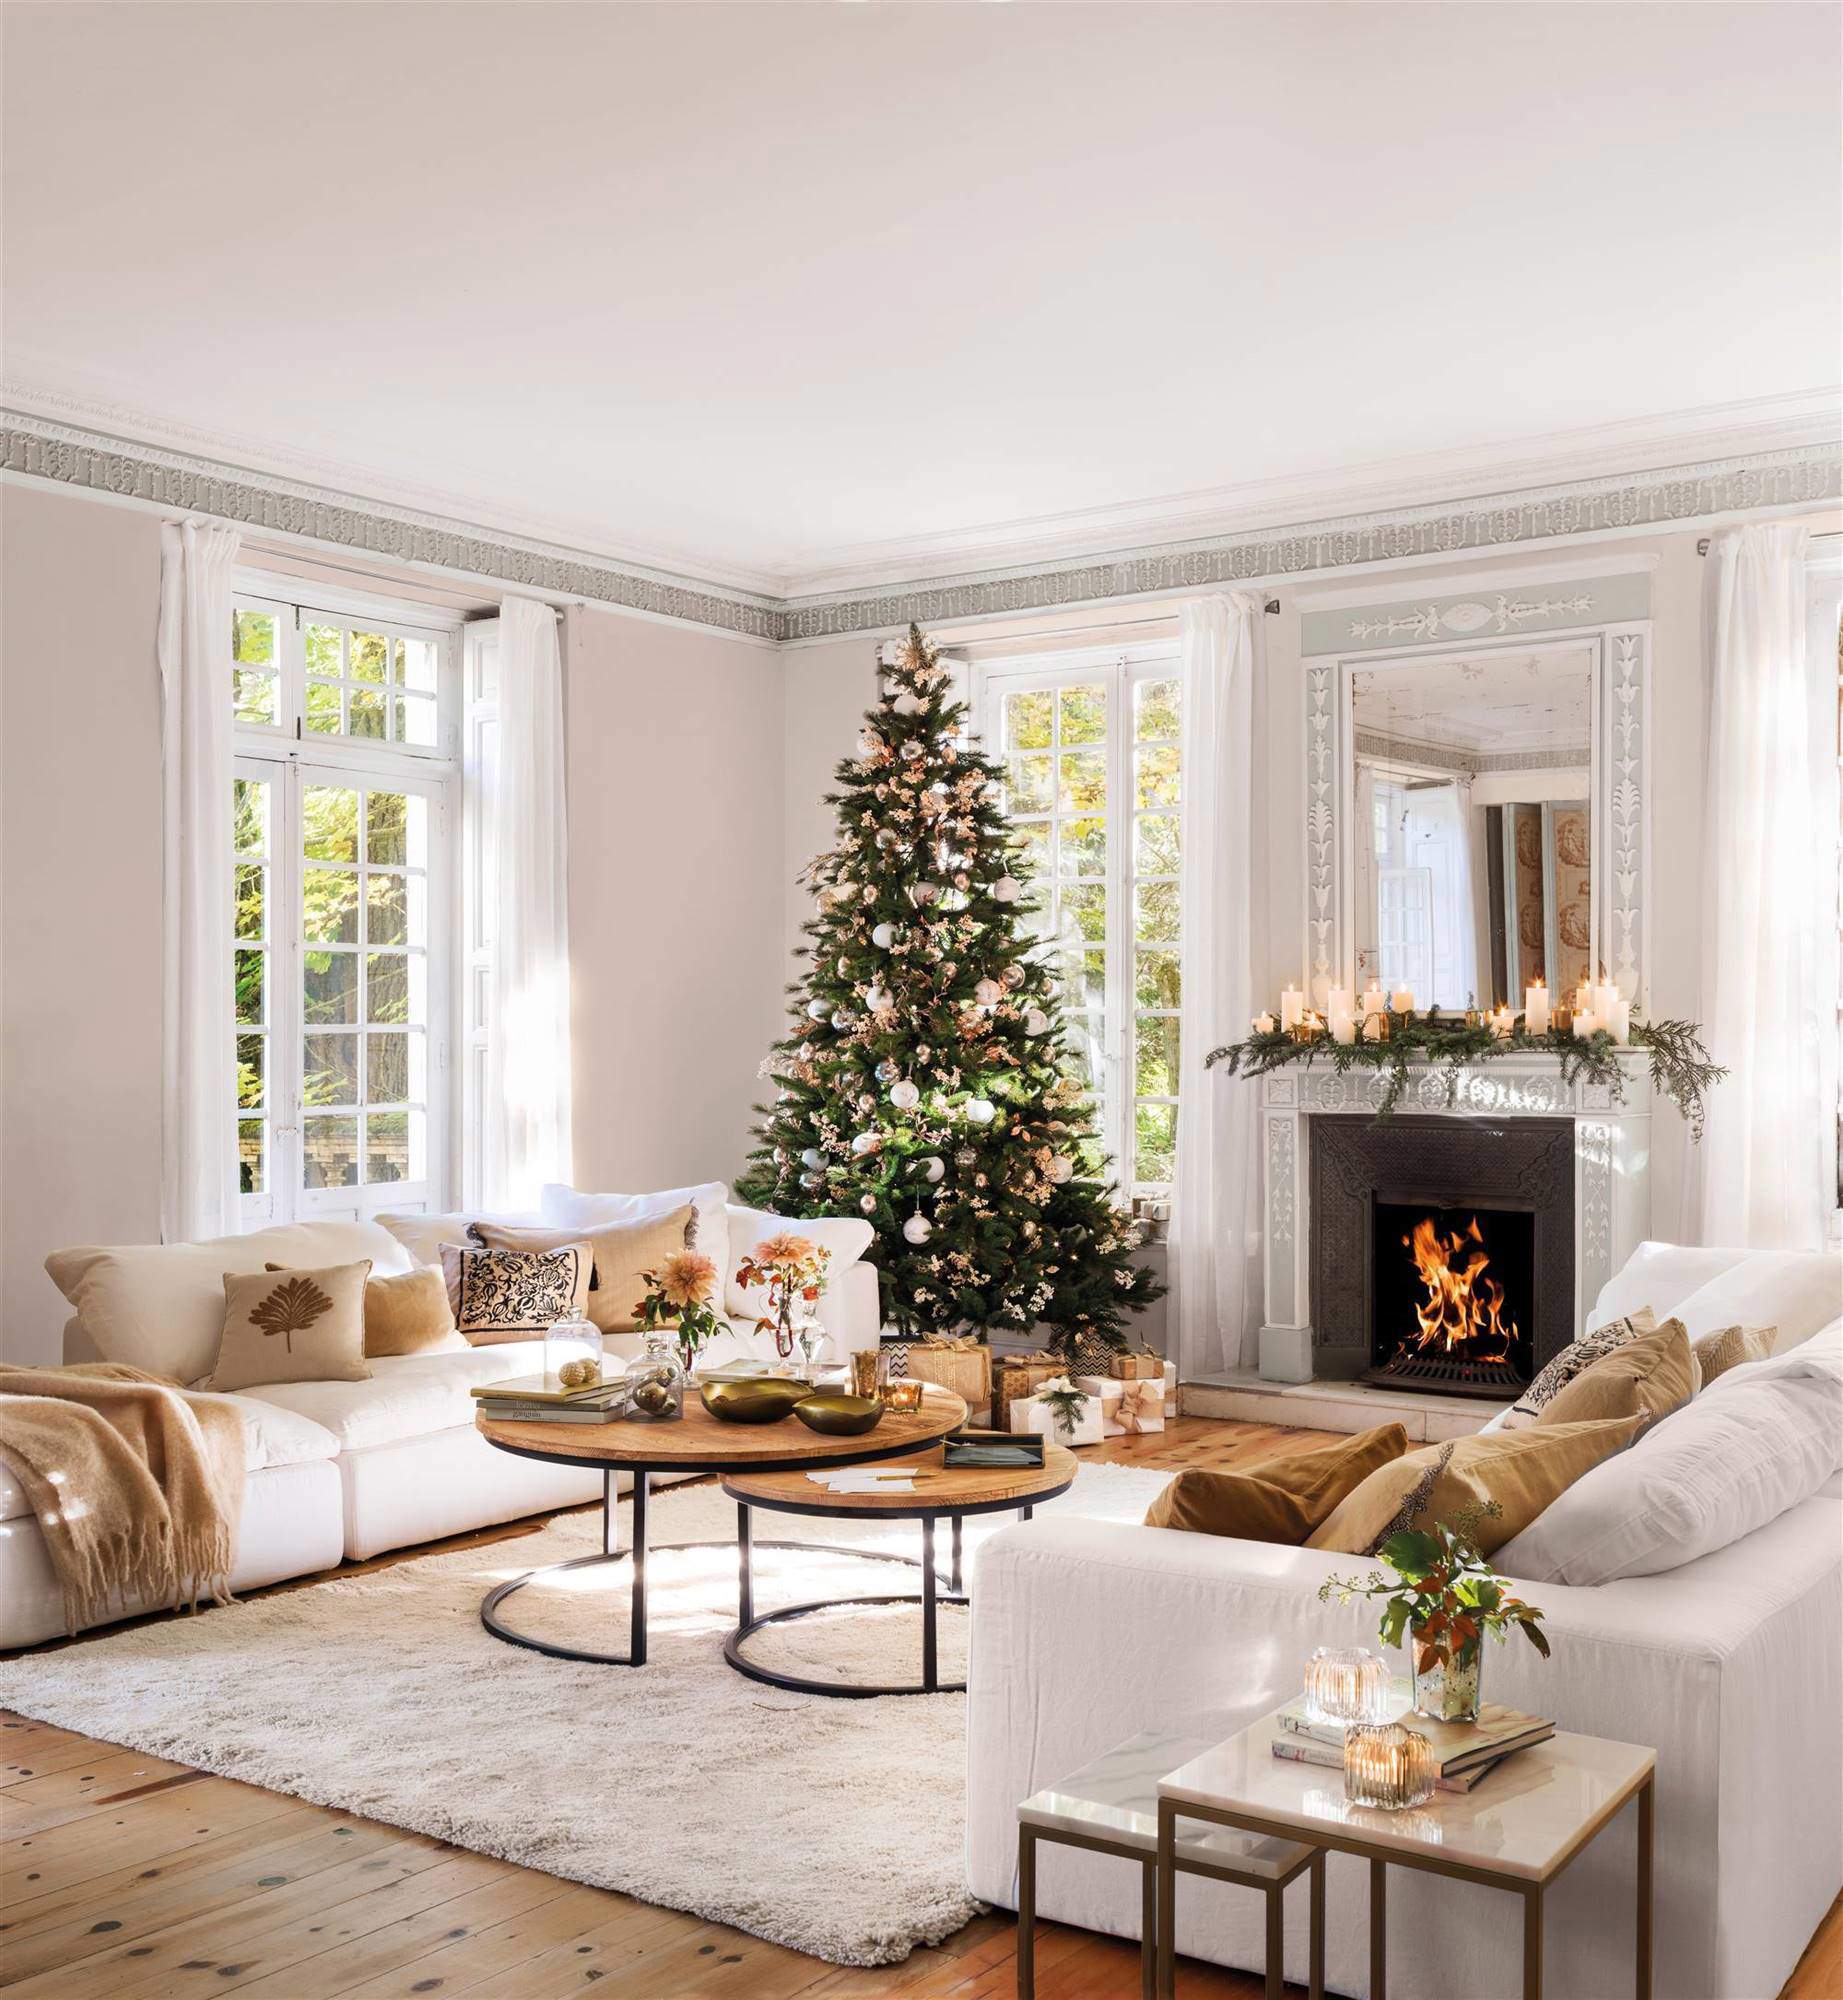 Salón con árbol de Navidad y adornos en rosa pálido, con chimenea.